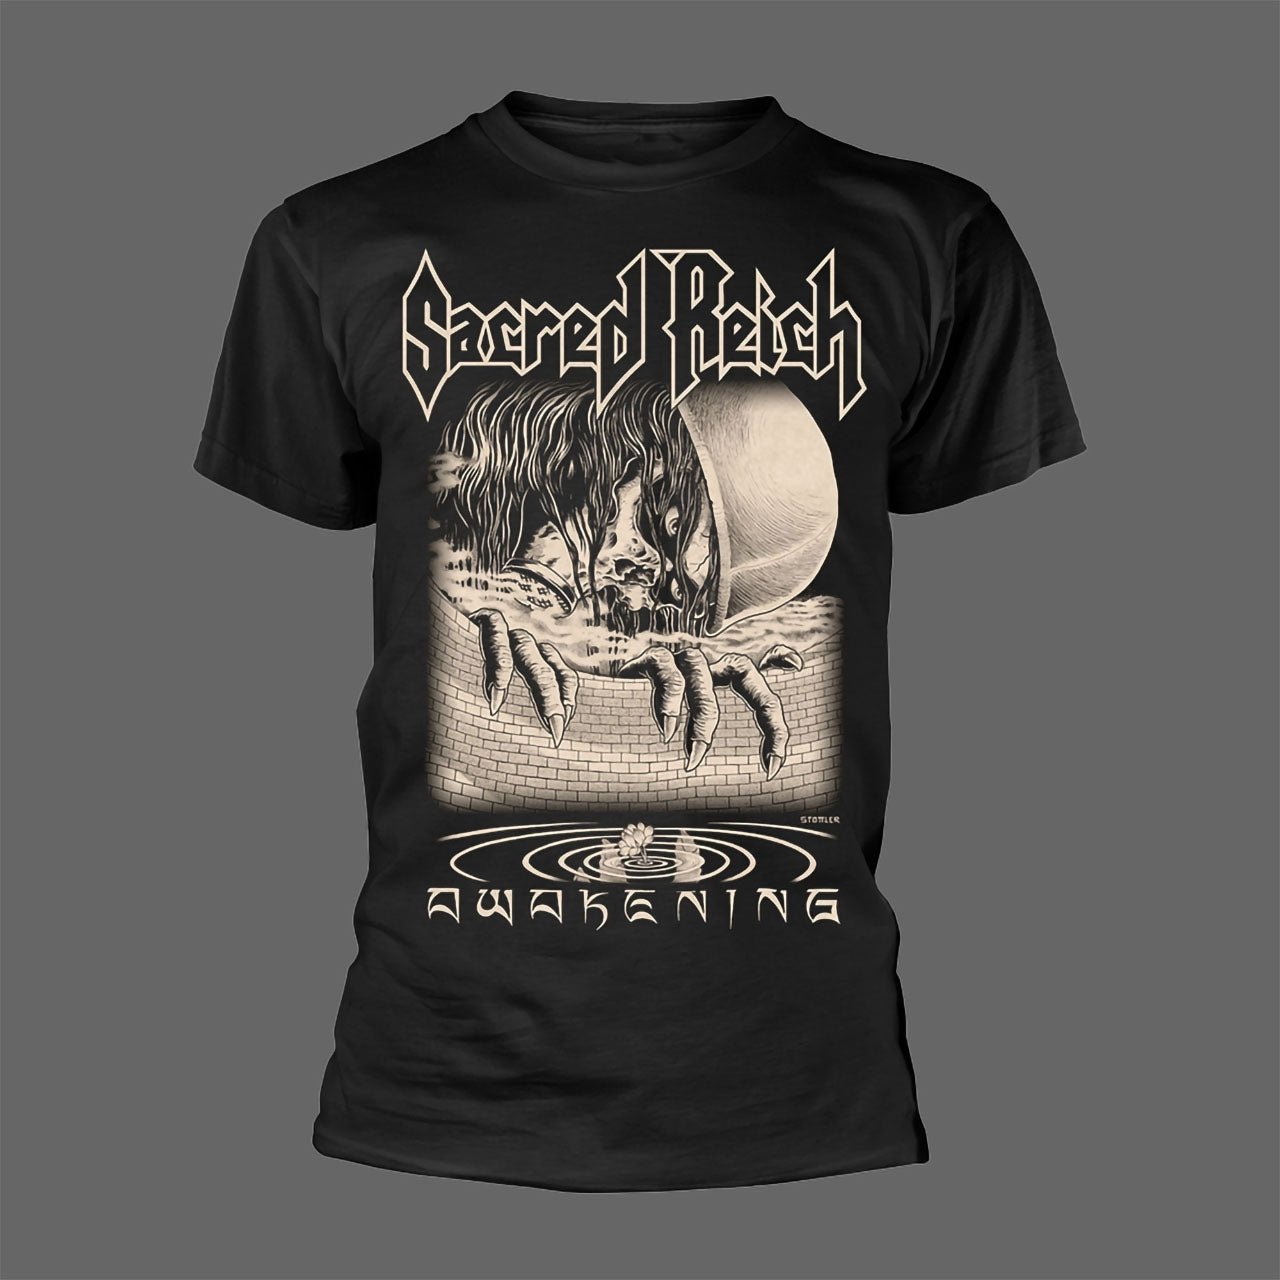 Sacred Reich - Awakening (T-Shirt)